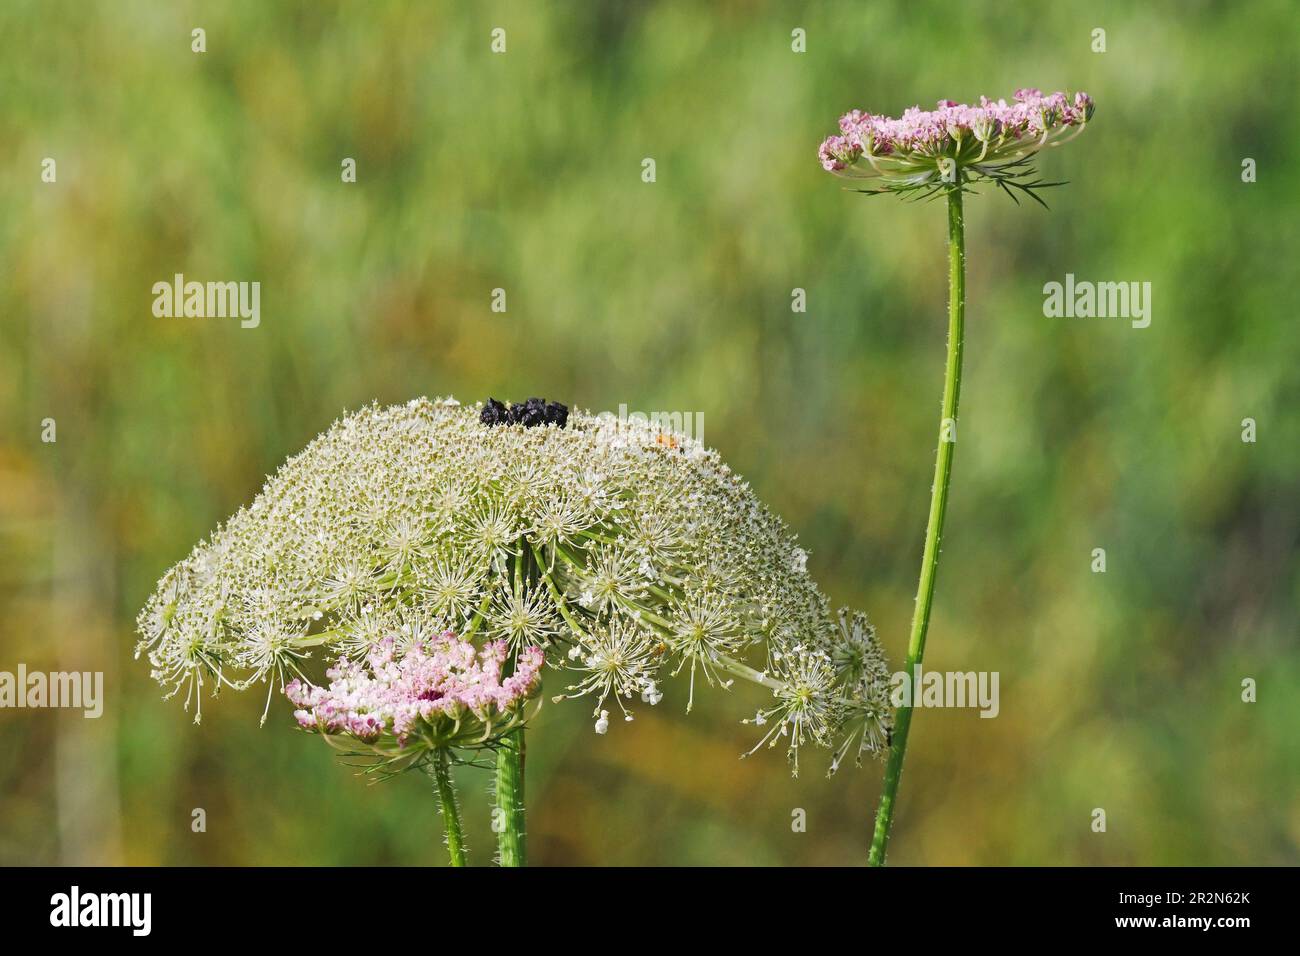 Umbelliferae, Apiaceae plant Stock Photo